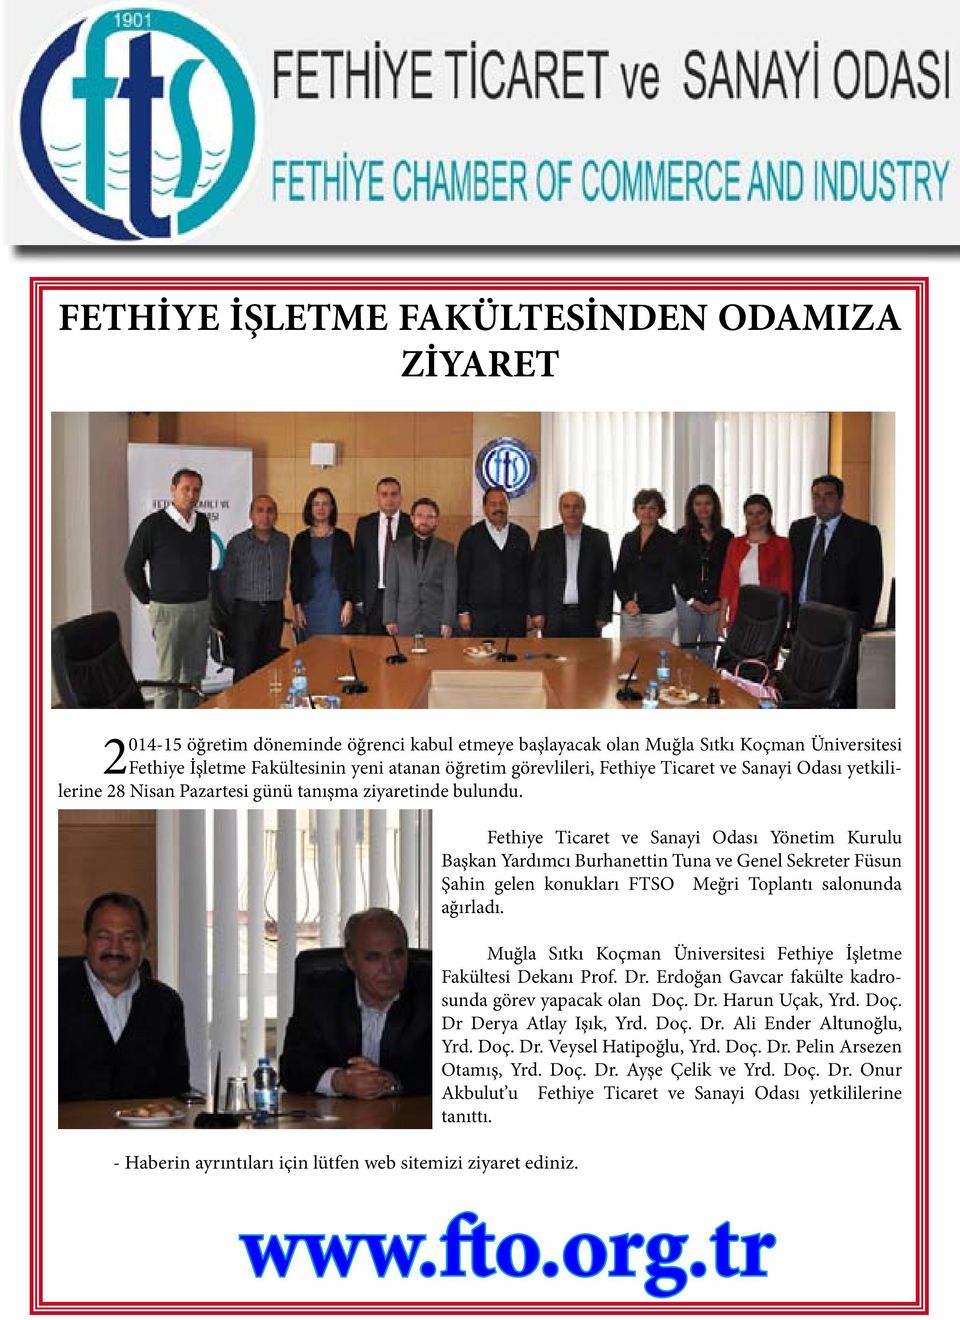 Fethiye Ticaret ve Sanayi Odası Yönetim Kurulu Başkan Yardımcı Burhanettin Tuna ve Genel Sekreter Füsun Şahin gelen konukları FTSO Meğri Toplantı salonunda ağırladı.